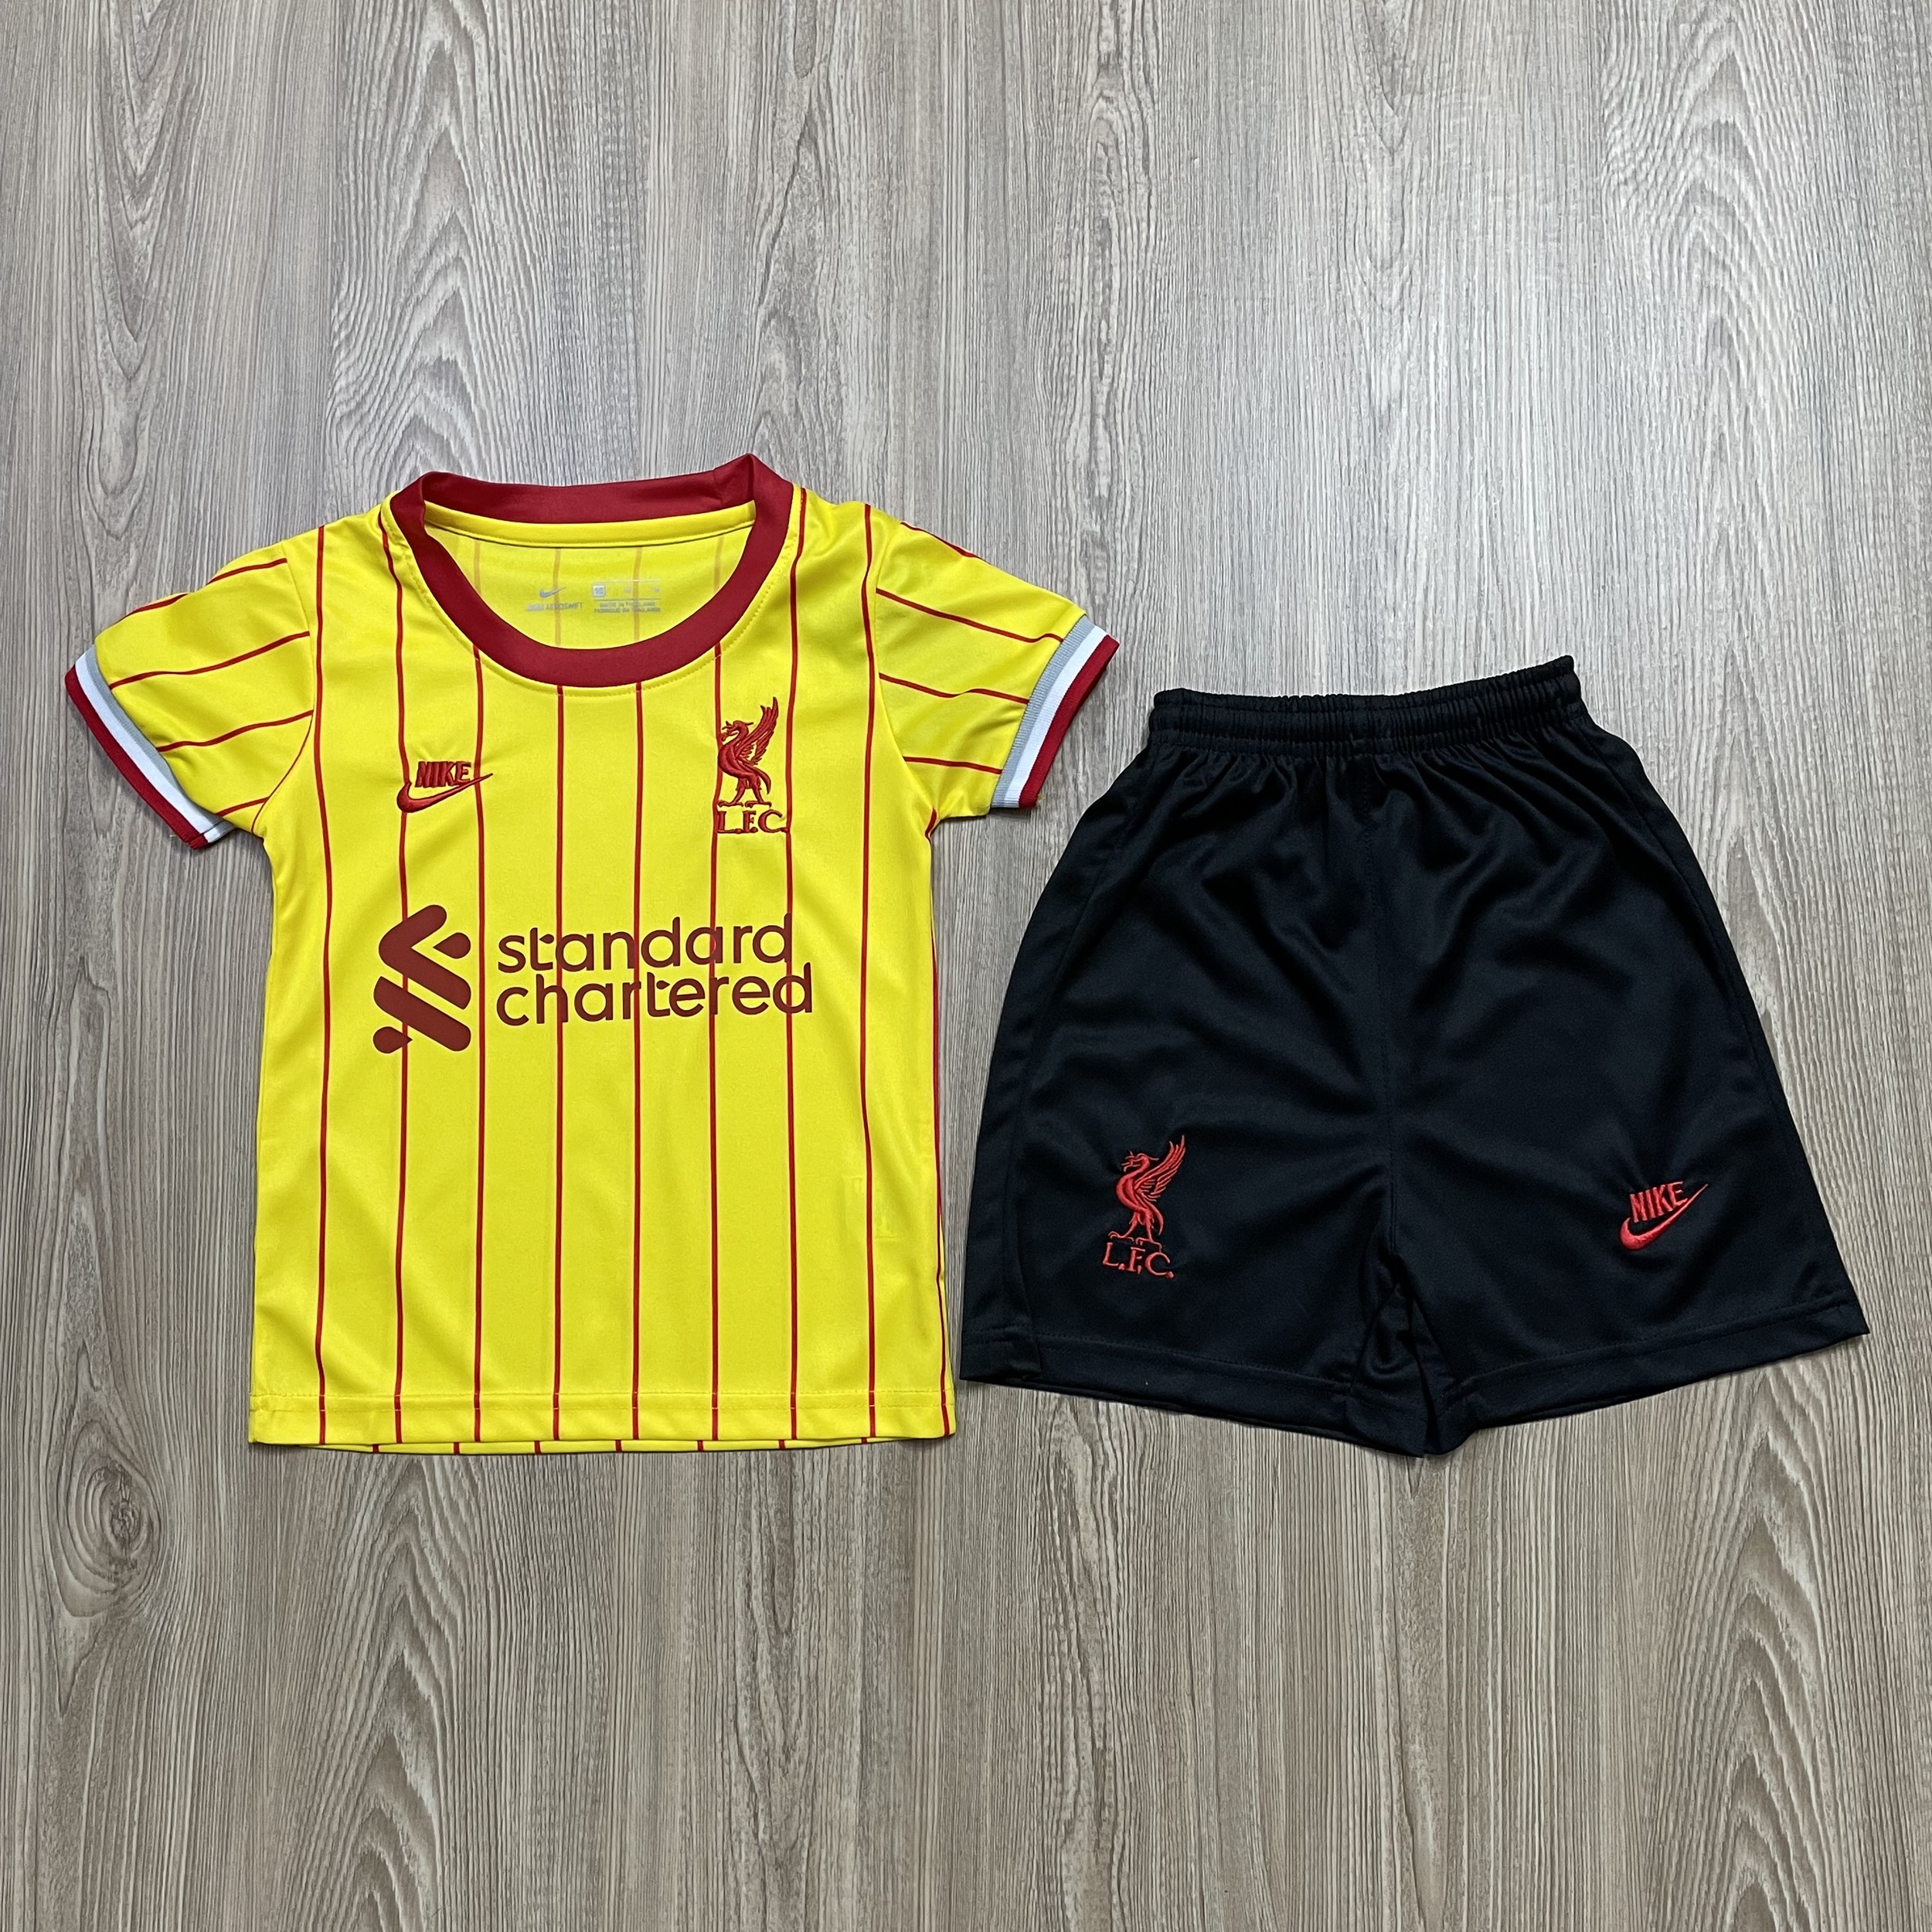 ชุดบอลเด็ก Liverpool ชุดกีฬาเด็กทีม เสื้อทีมเชลซี ซื้อครั้งเดียวได้ทั้งชุด (เสื้อ+กางเกง) ตัวเดียวในราคาส่ง สินค้าเกรด-A